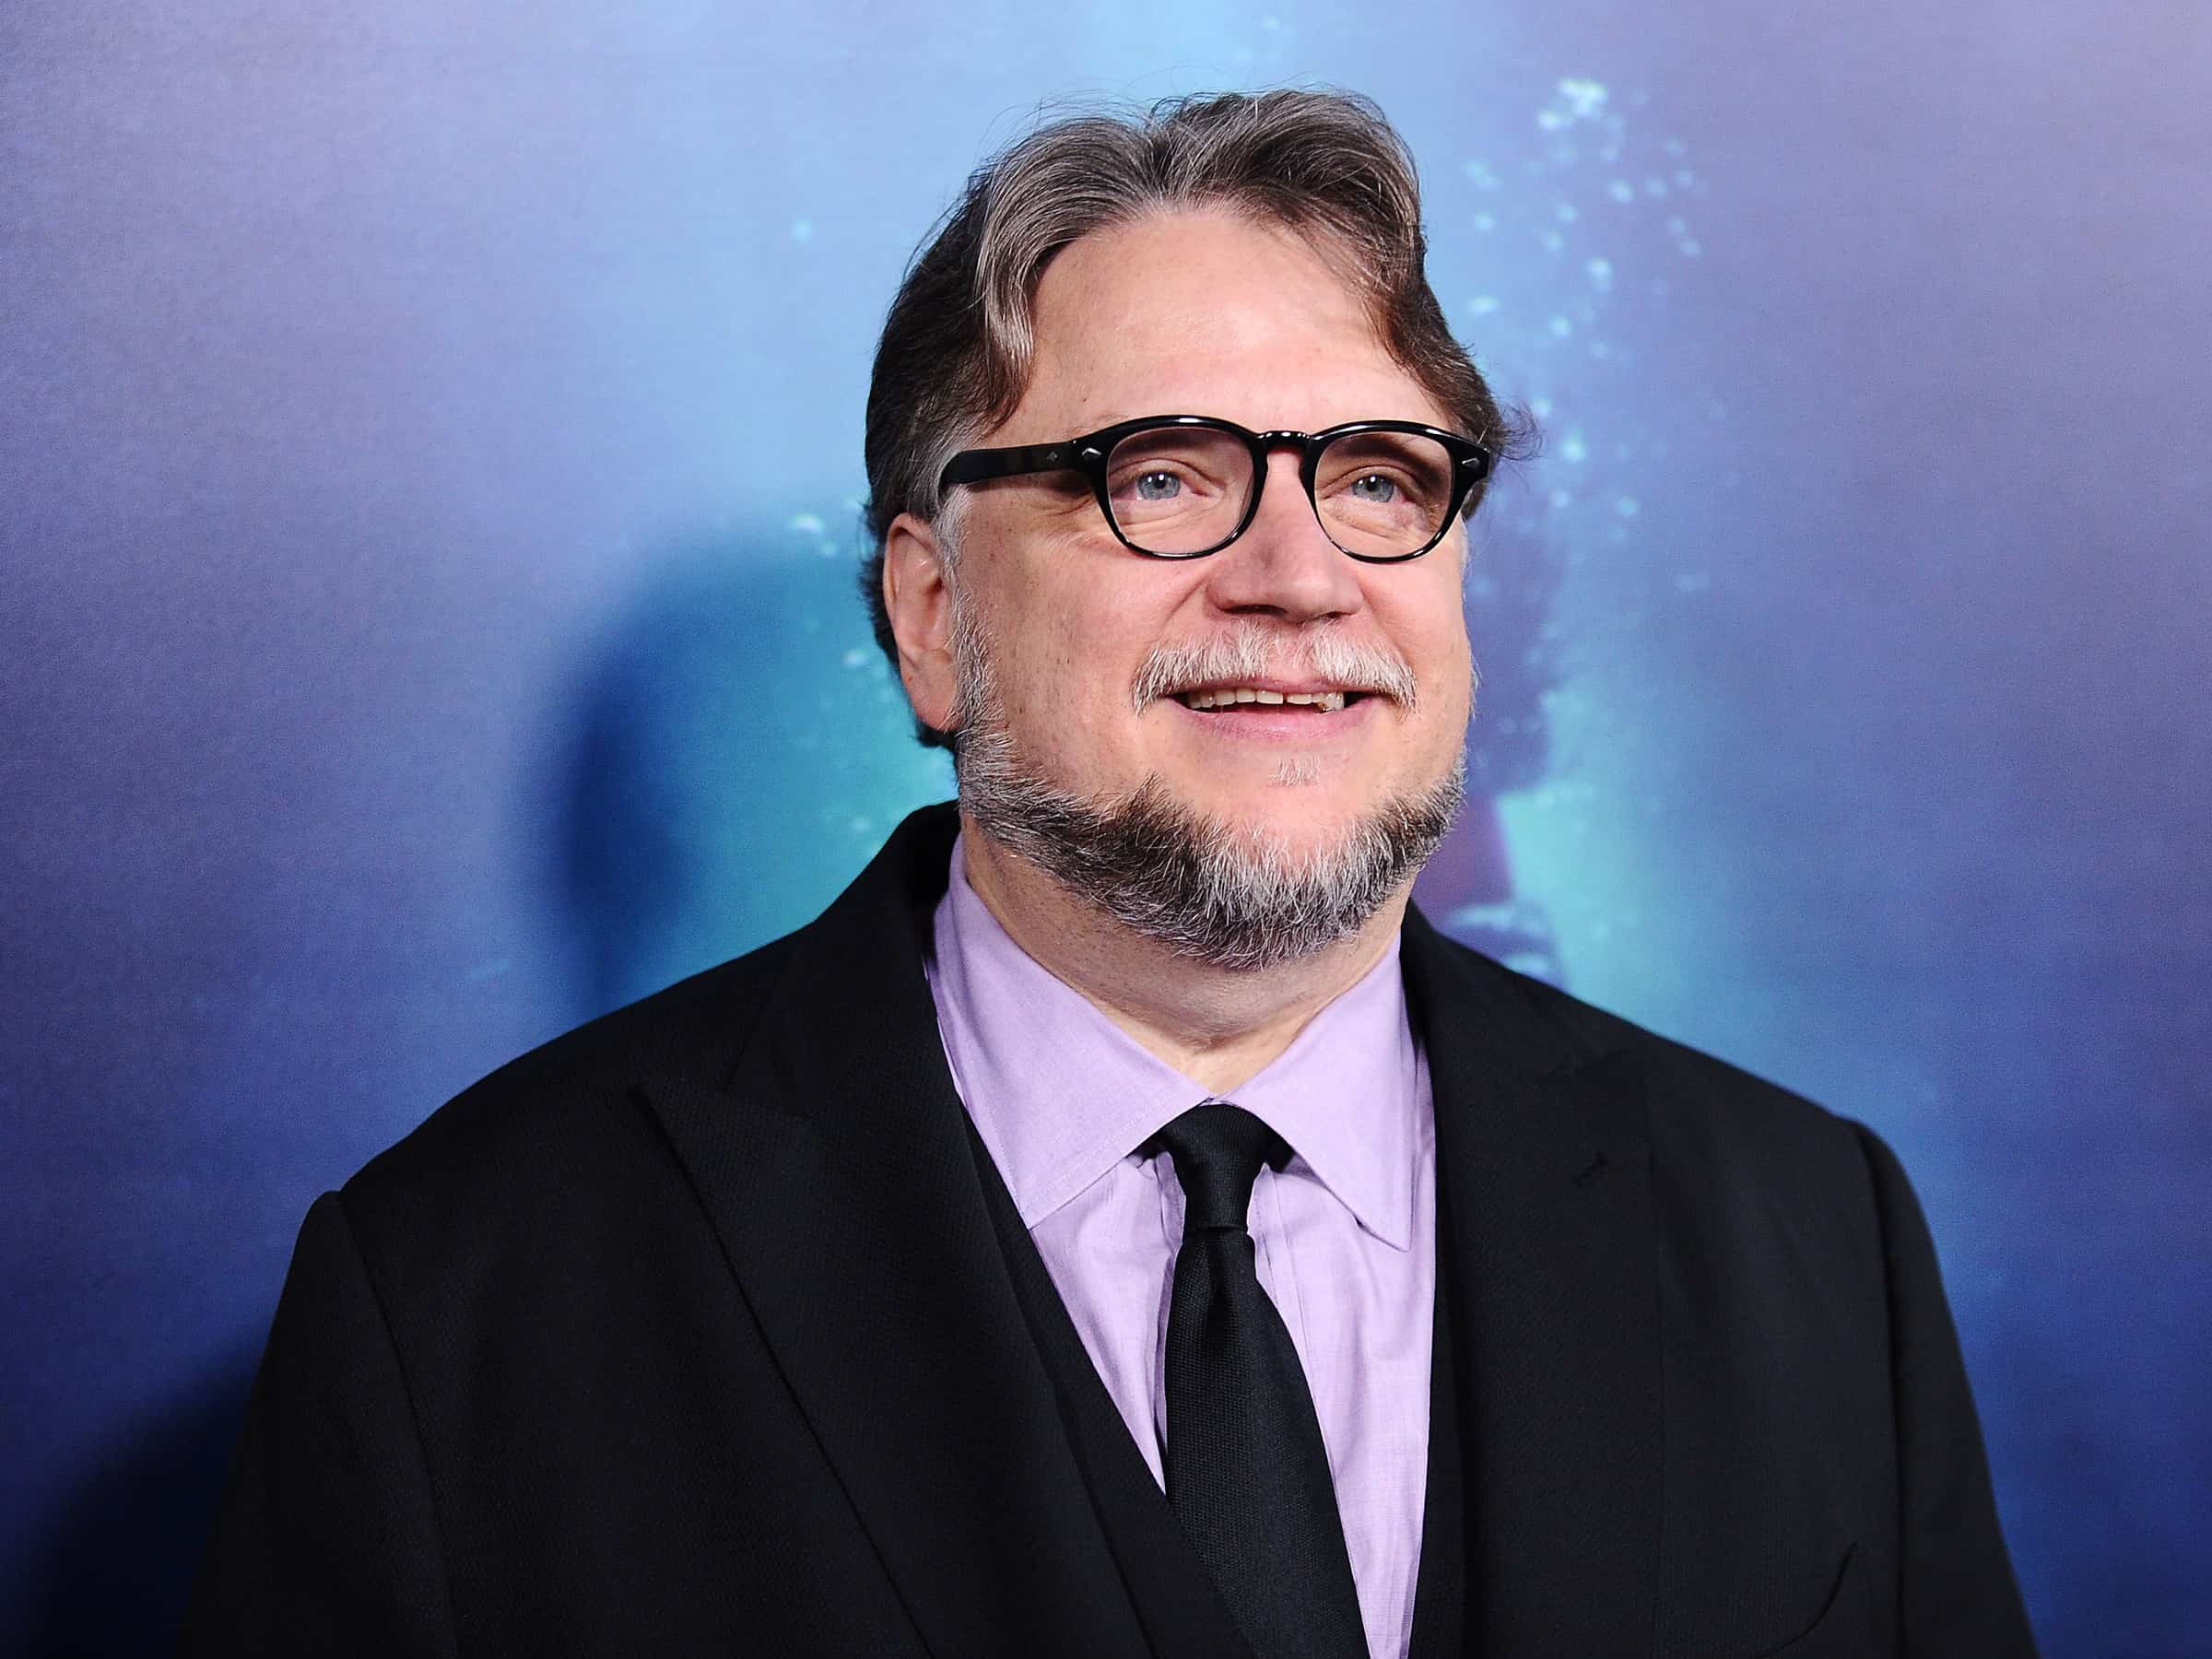 Where does Guillermo del Toro live?